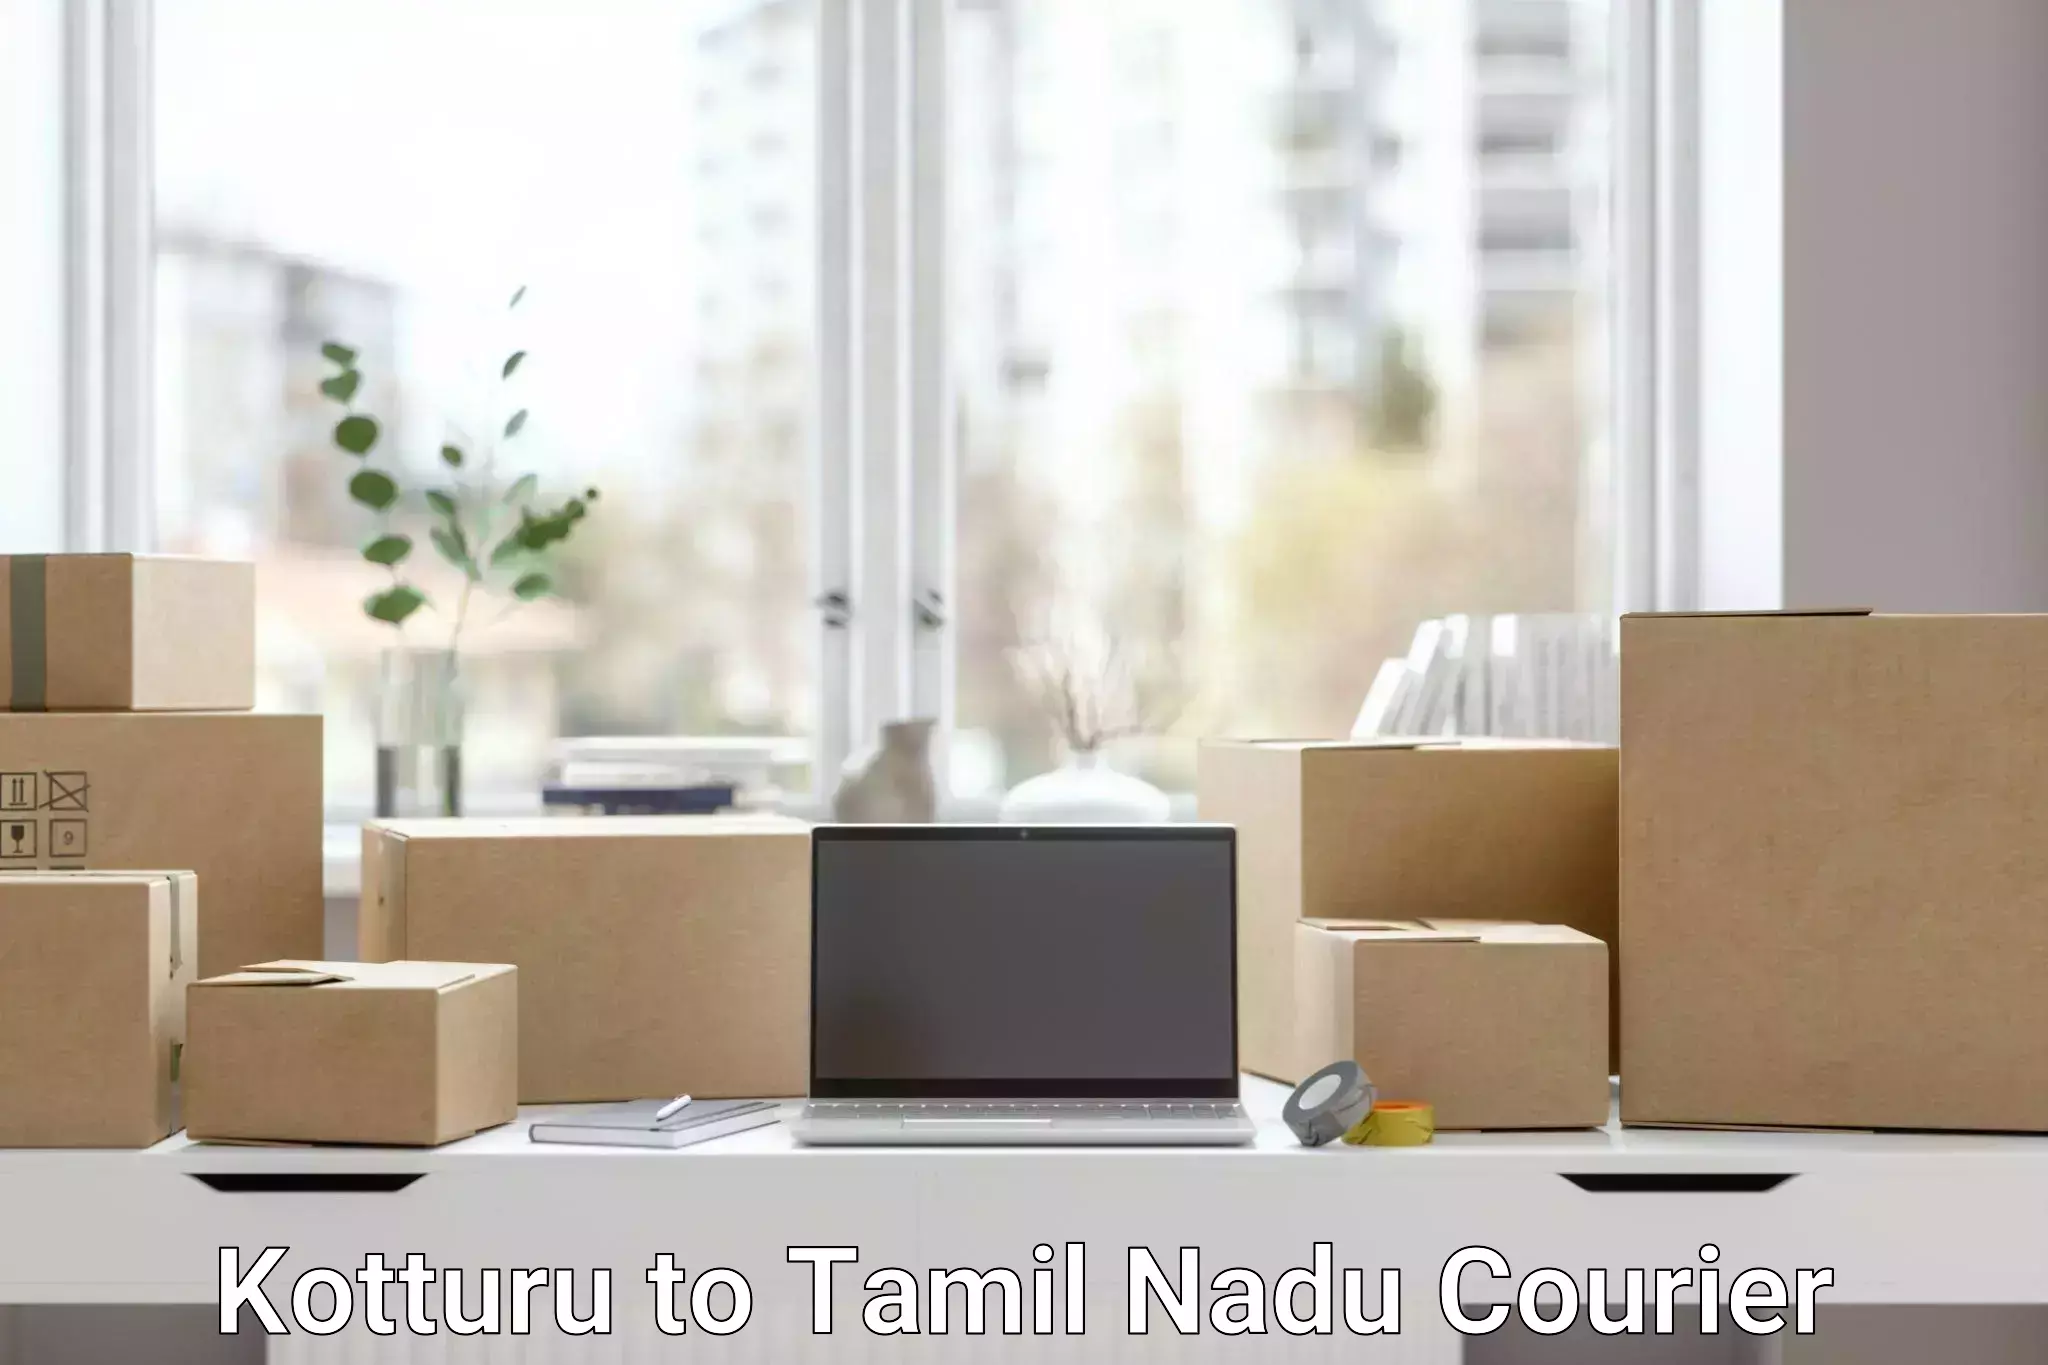 Automated shipping Kotturu to Tamil Nadu